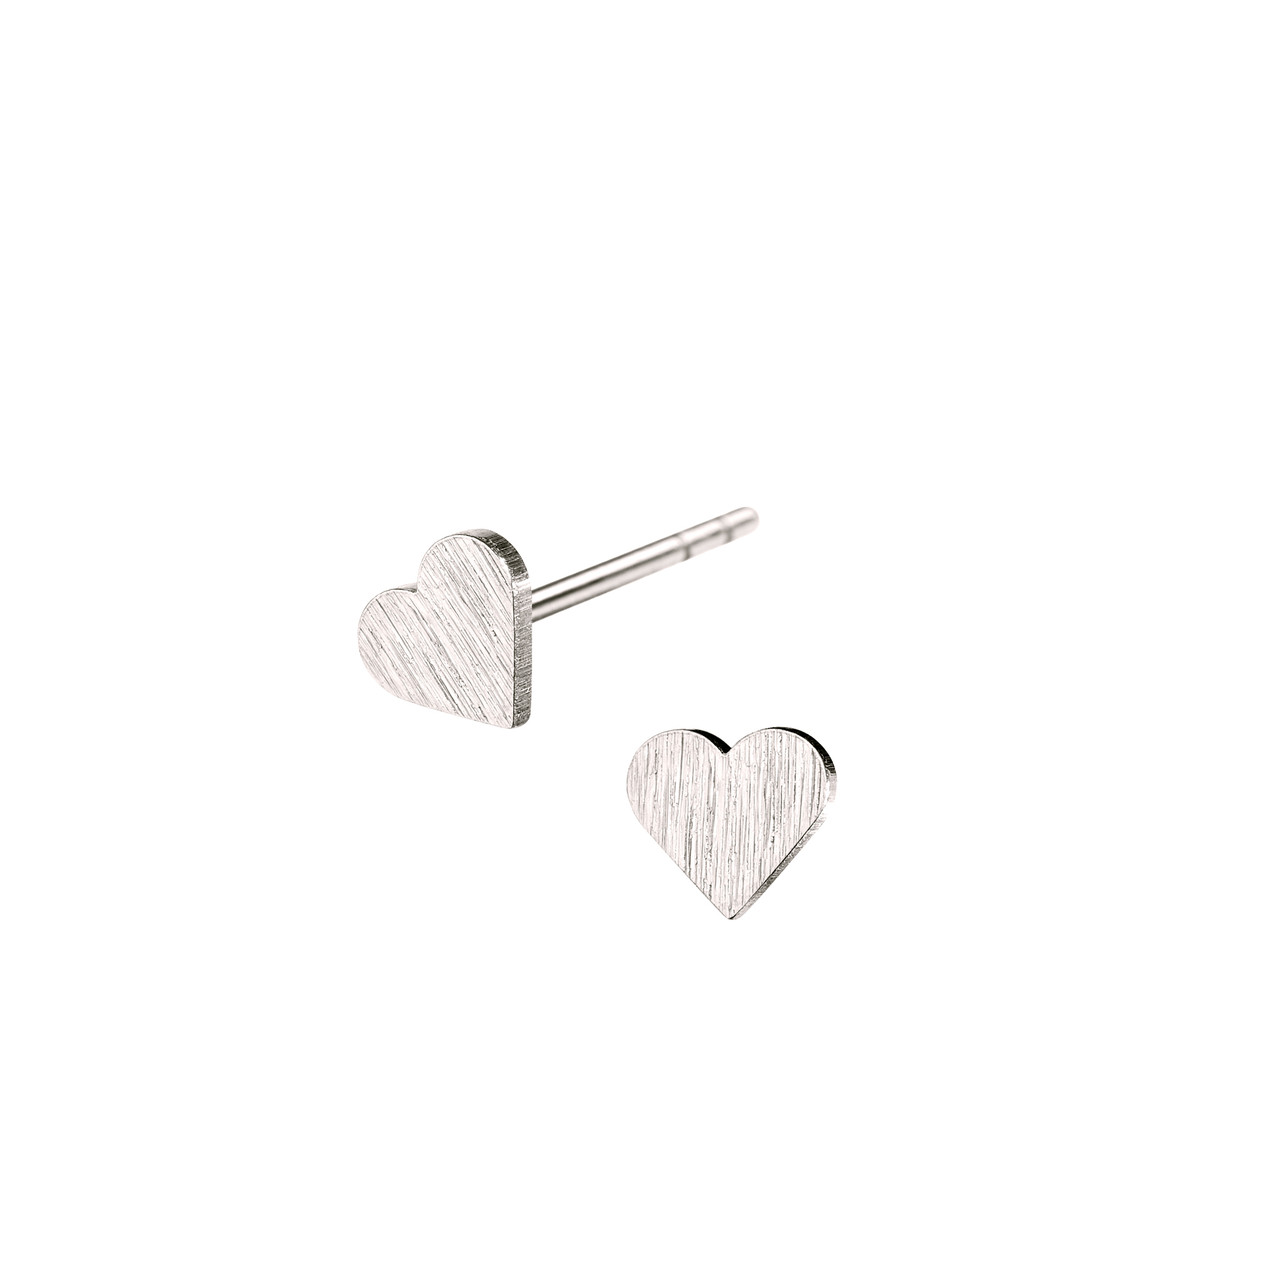 Tiny Heart studs earrings by Scherning, tomfoolery London | www.tomfoolerylondon.co.uk